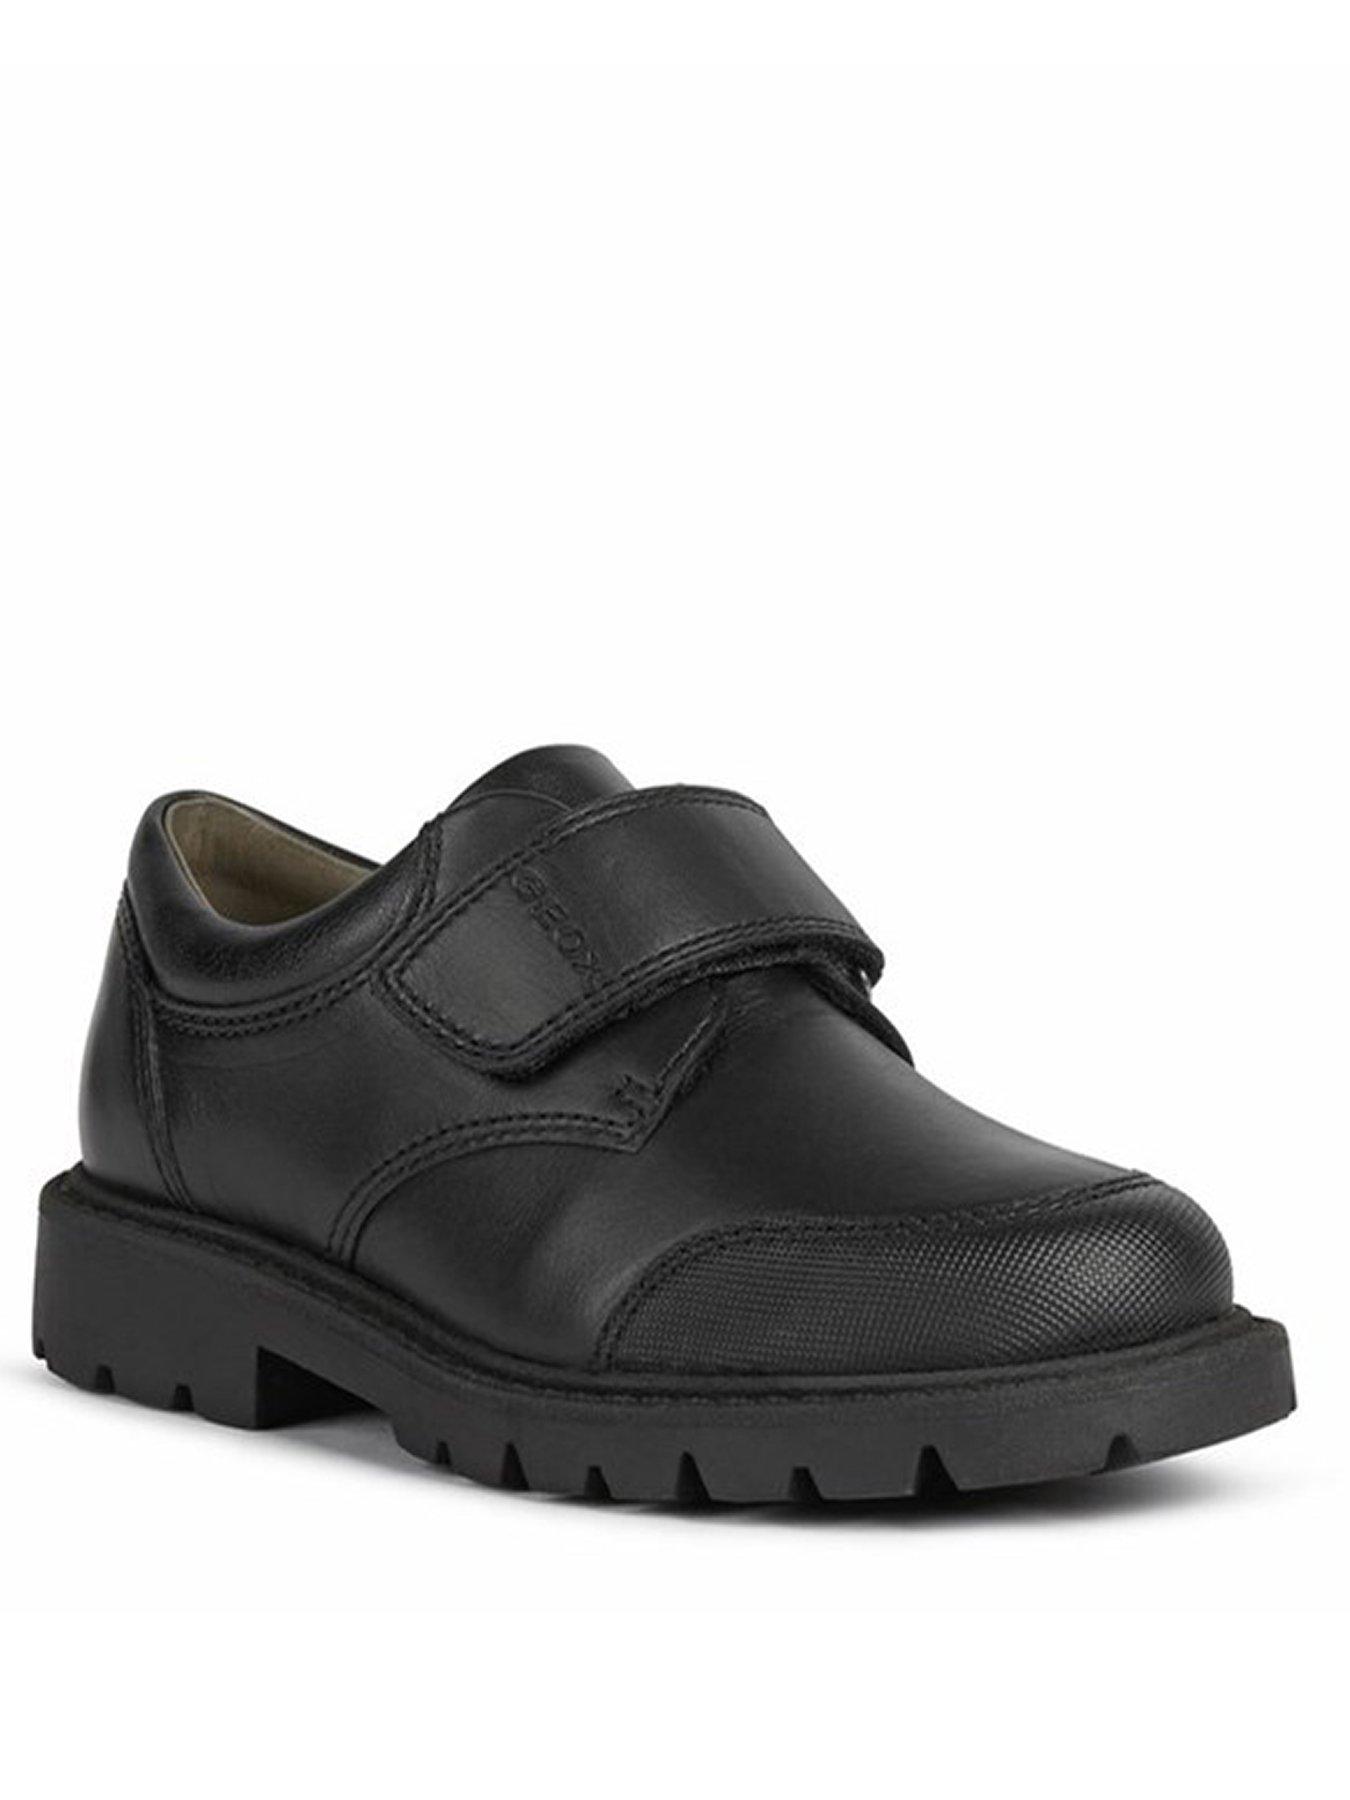 Geox Velcro Strap School Shoe - Black | very.co.uk